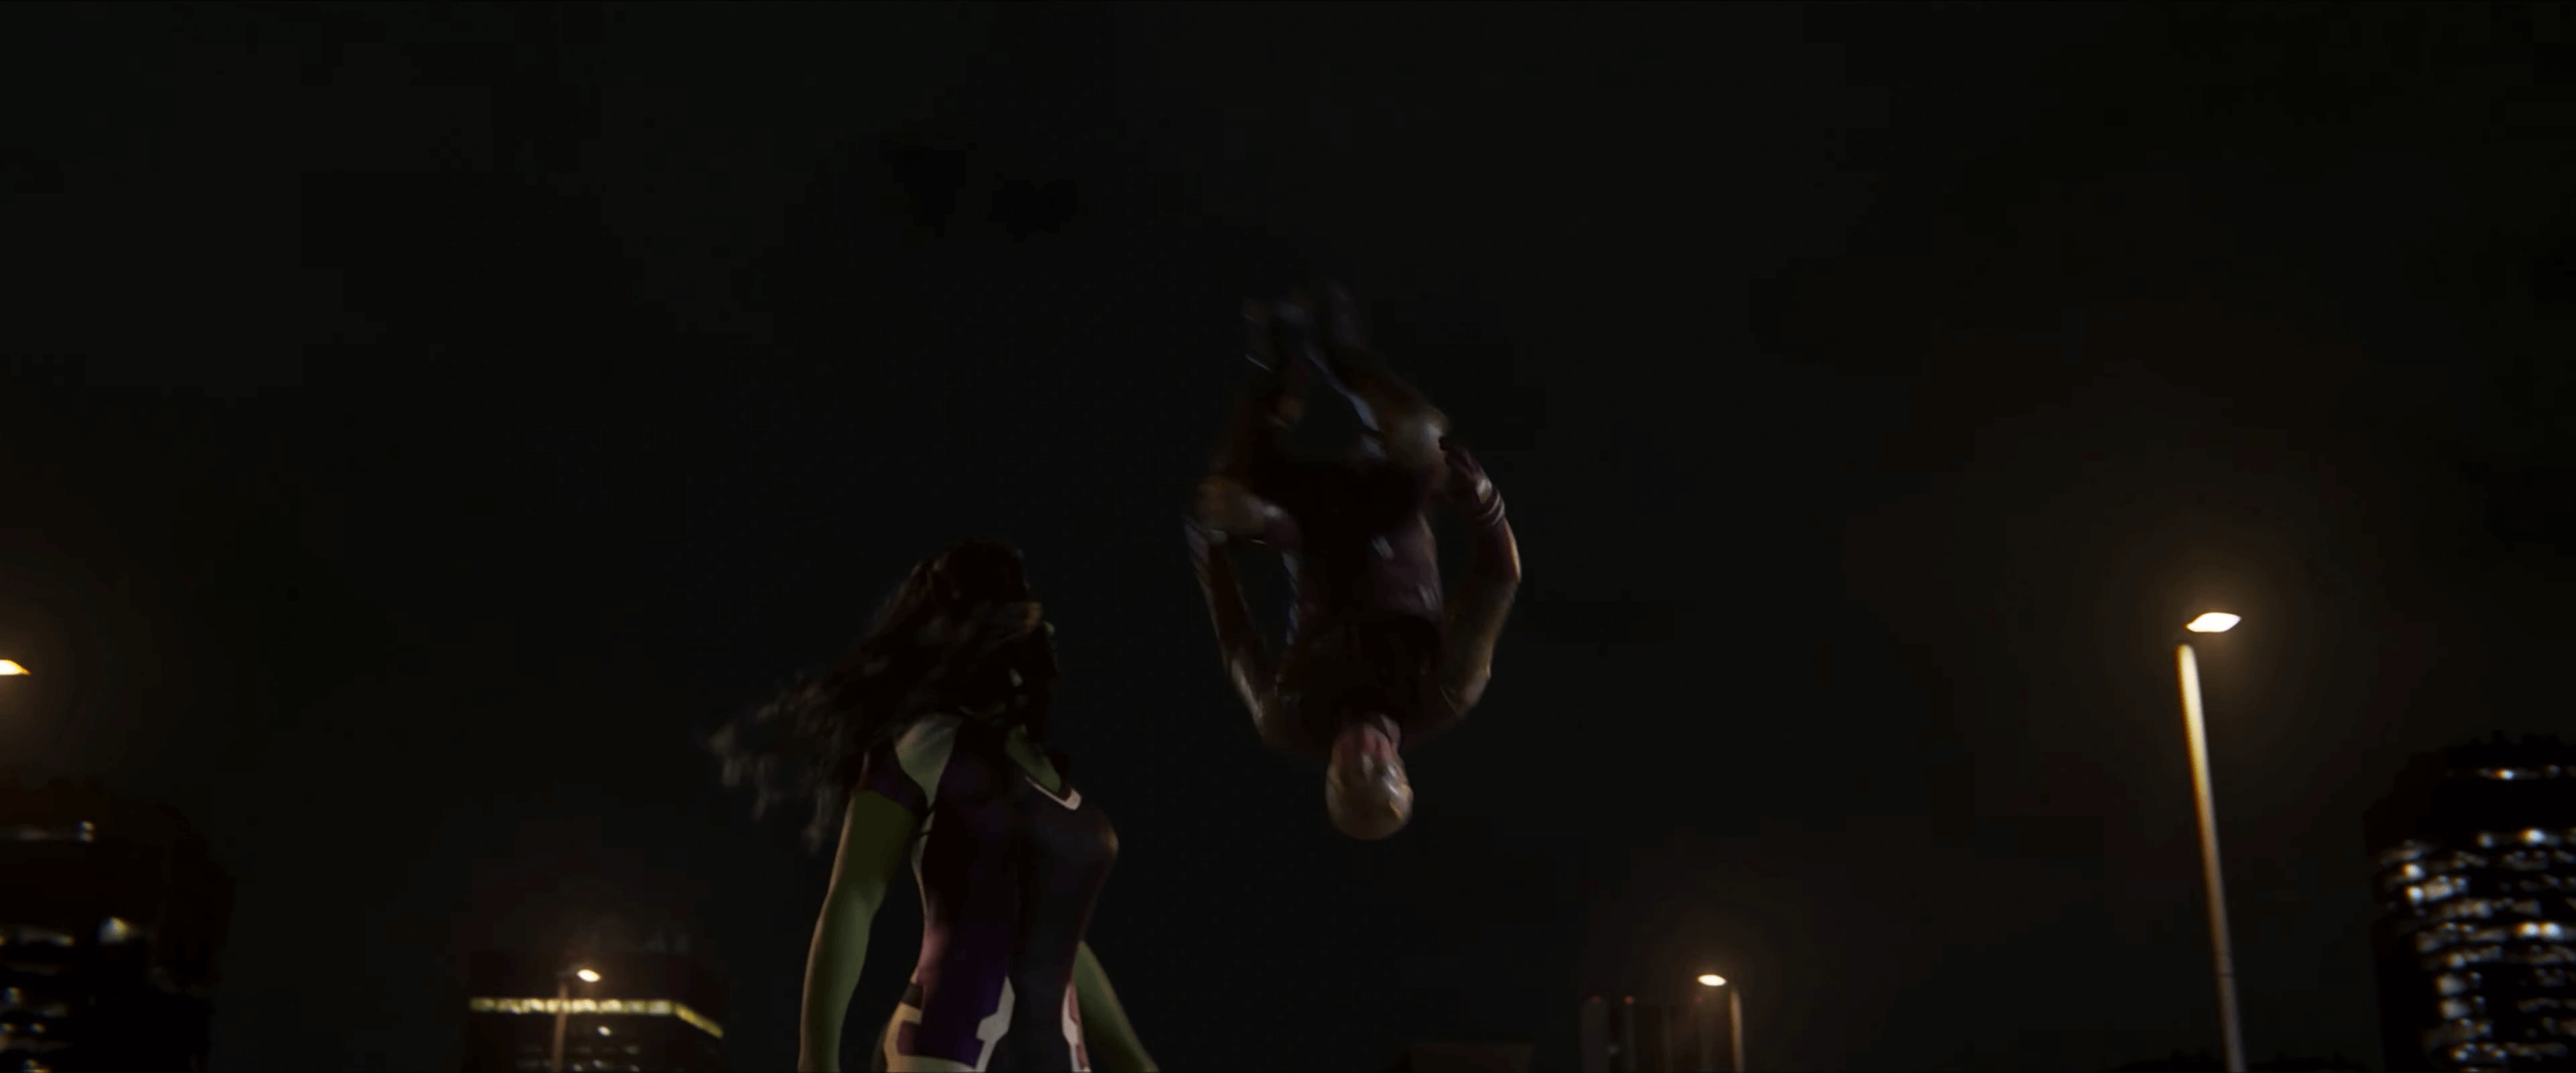 Daredevil irrompe nella scena con il costume rosso e giallo nel trailer di She-Hulk